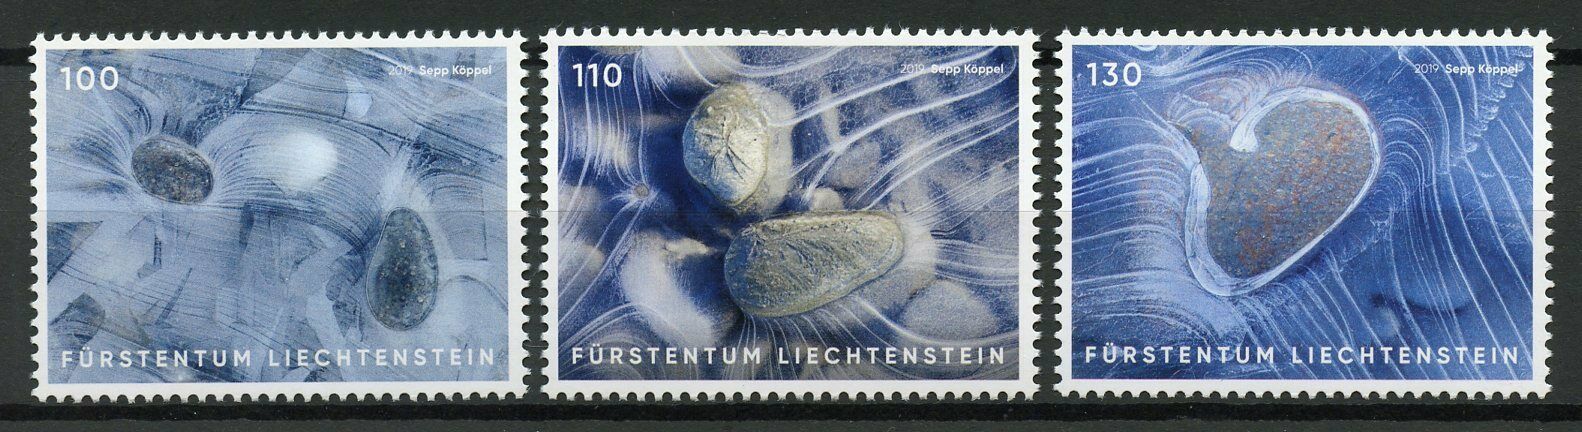 Liechtenstein Art Stamps 2019 MNH Artistic Photography Ice 3v Set